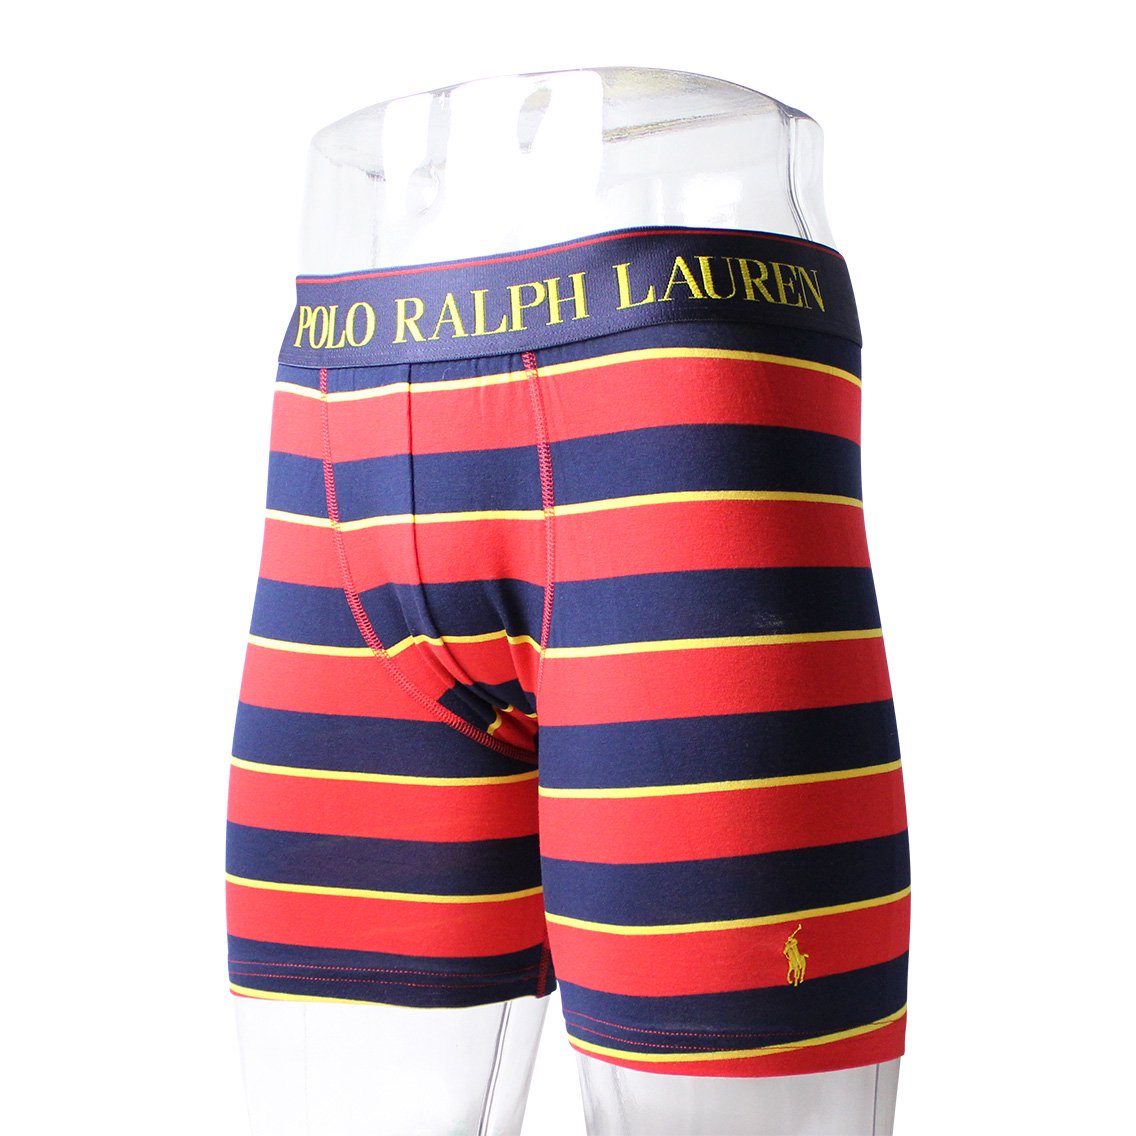 Polo Ralph Lauren(ポロラルフローレン)[L999HR-QV3]:ボクサーパンツ,男性下着,インナーの通販